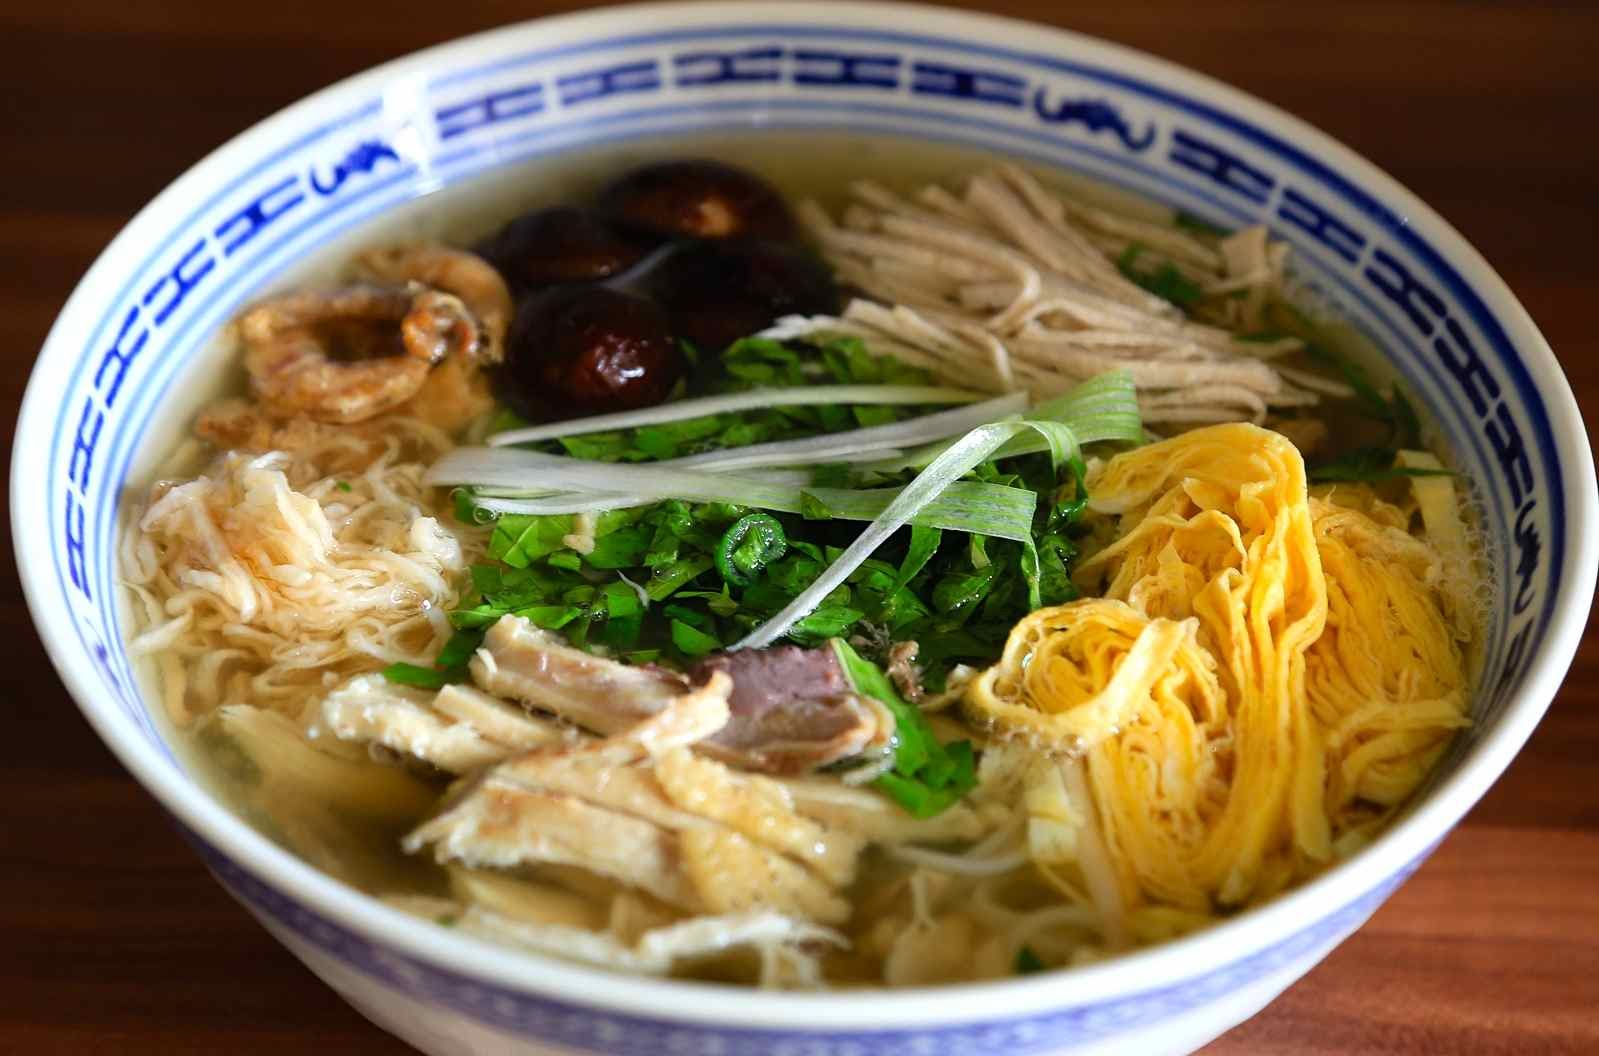 Best restaurants selling Bun Thang in Hanoi